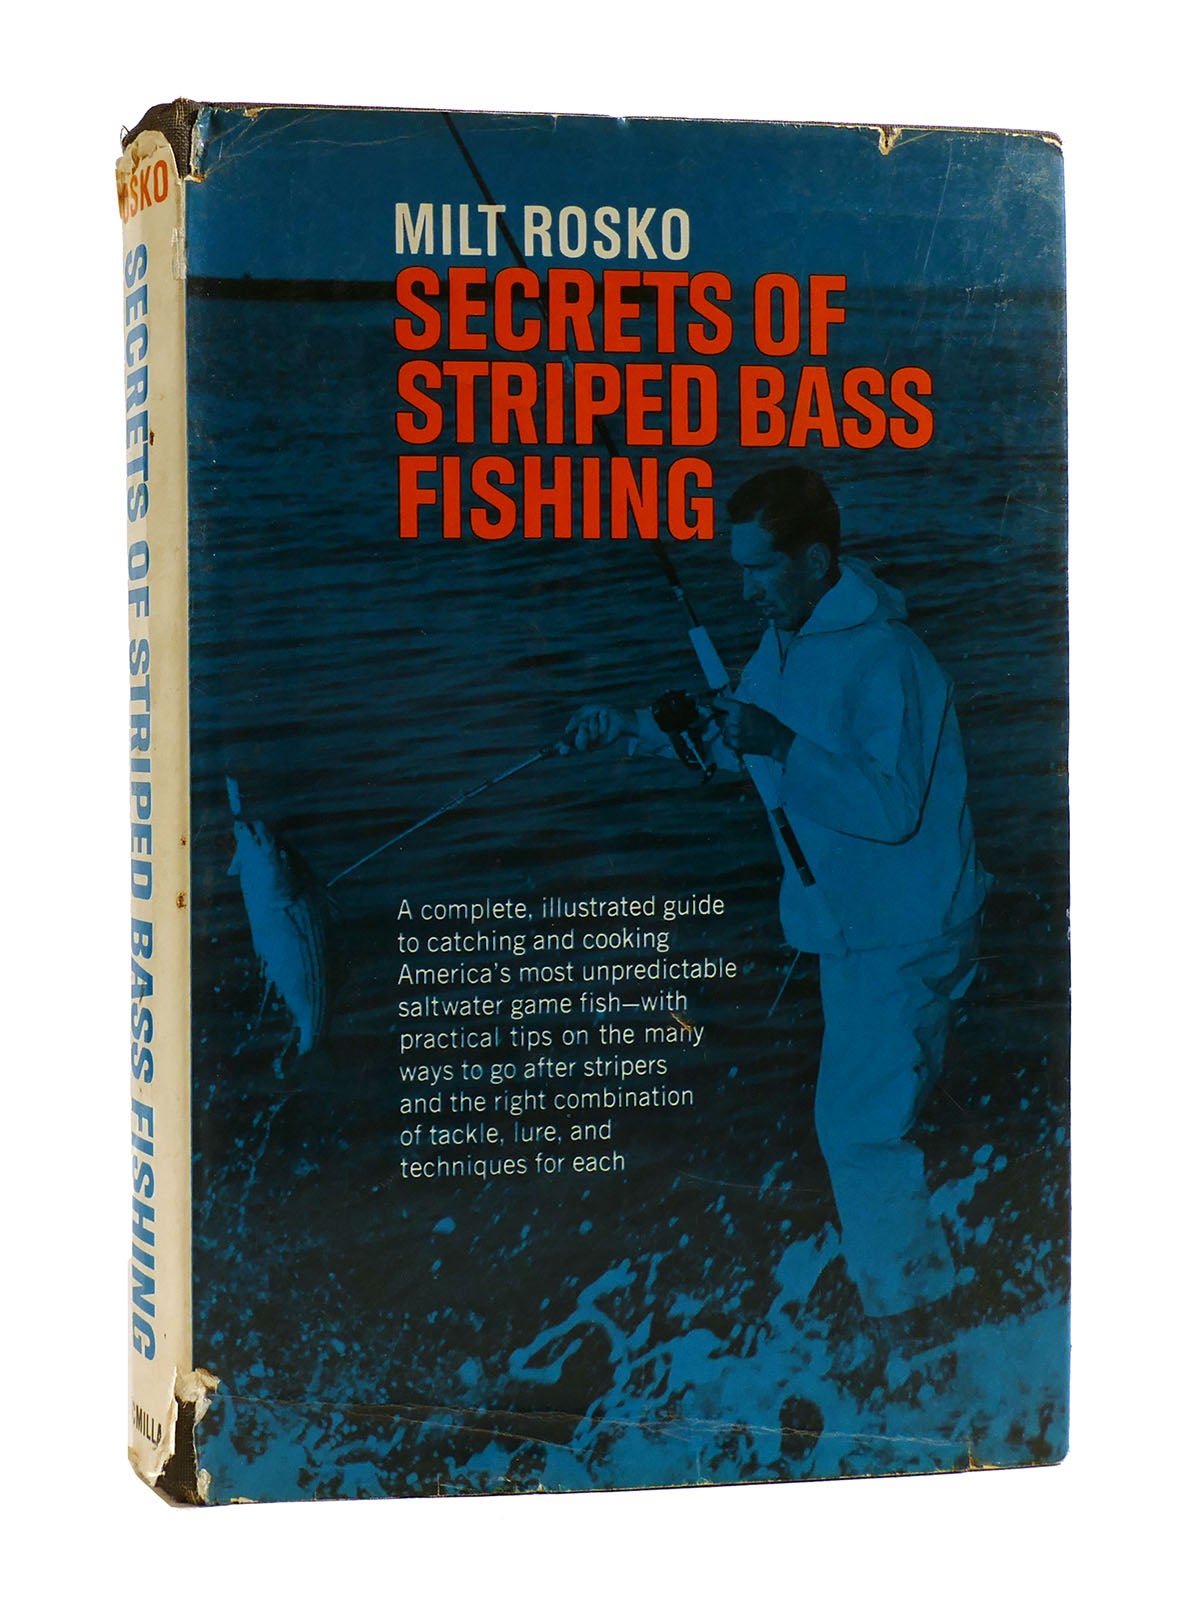 SECRETS OF STRIPED BASS FISHING, Milt Rosko